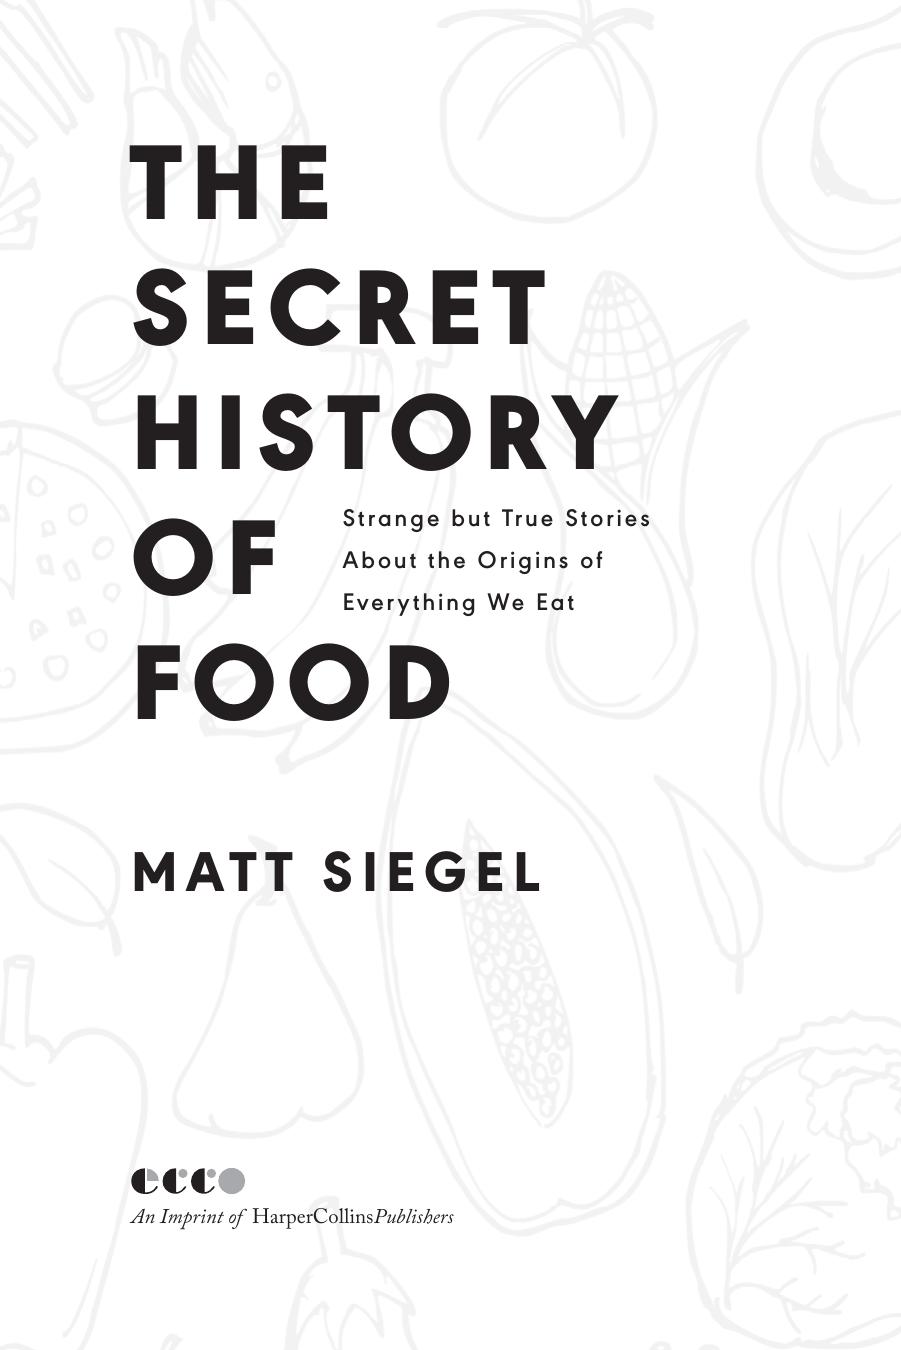 The Secret History of Food by Matt Siegel